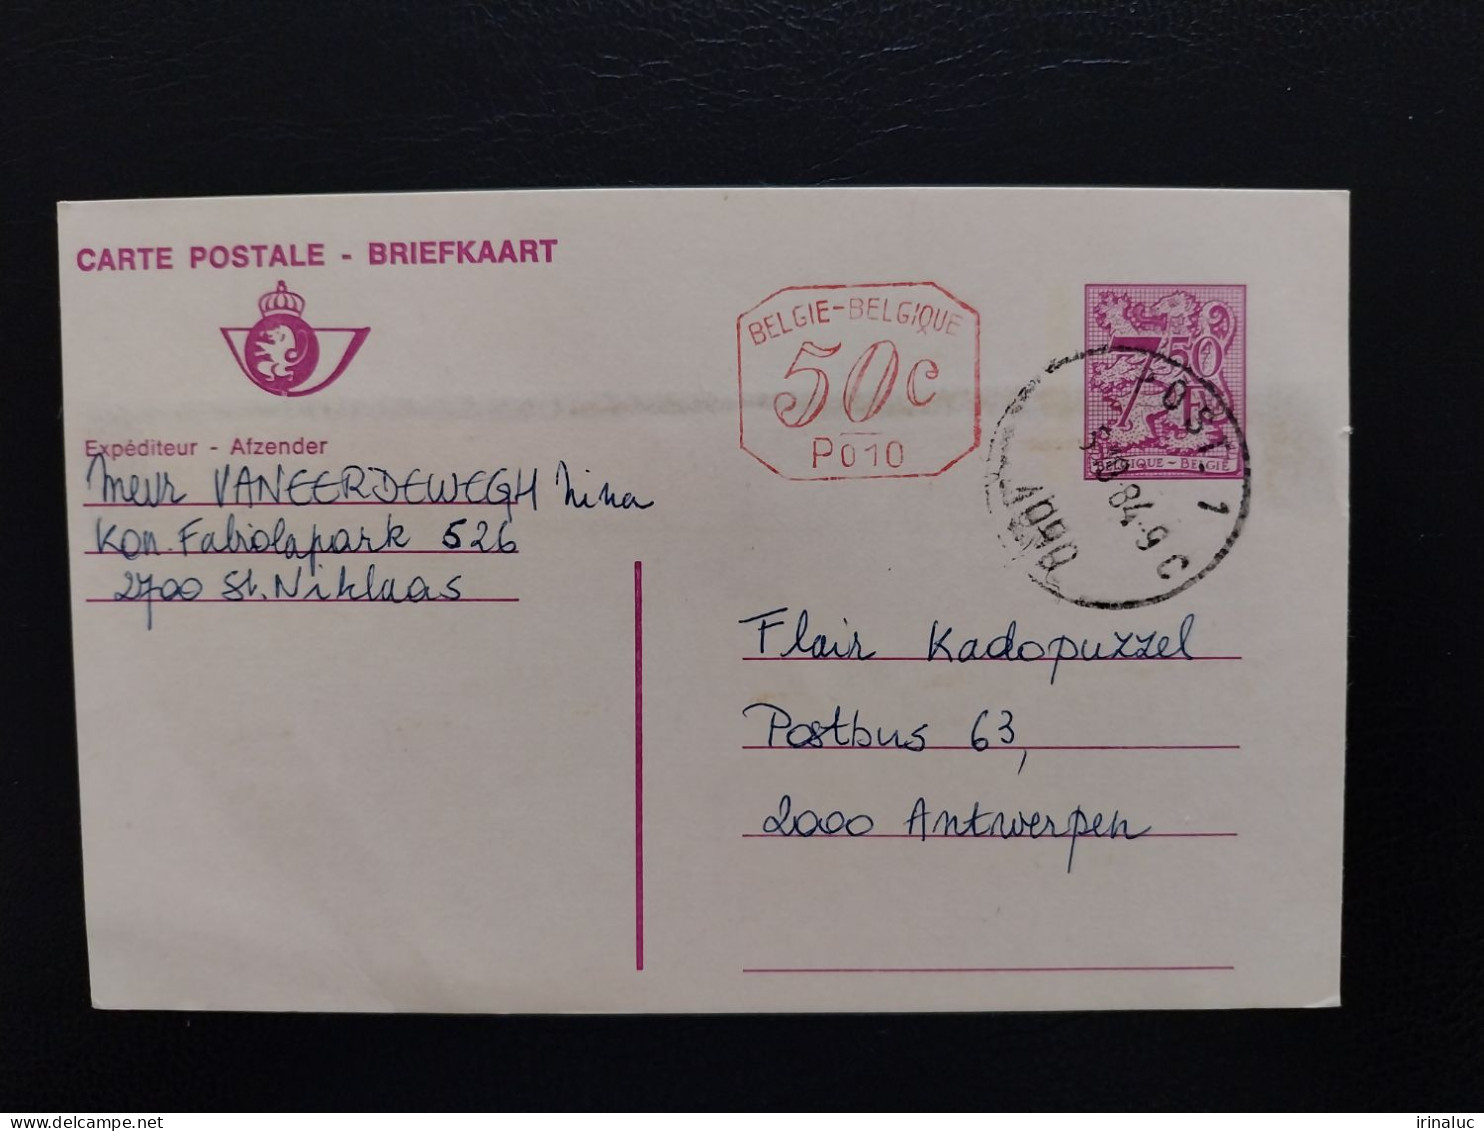 Briefkaart 191-I P010M - Cartes Postales 1951-..